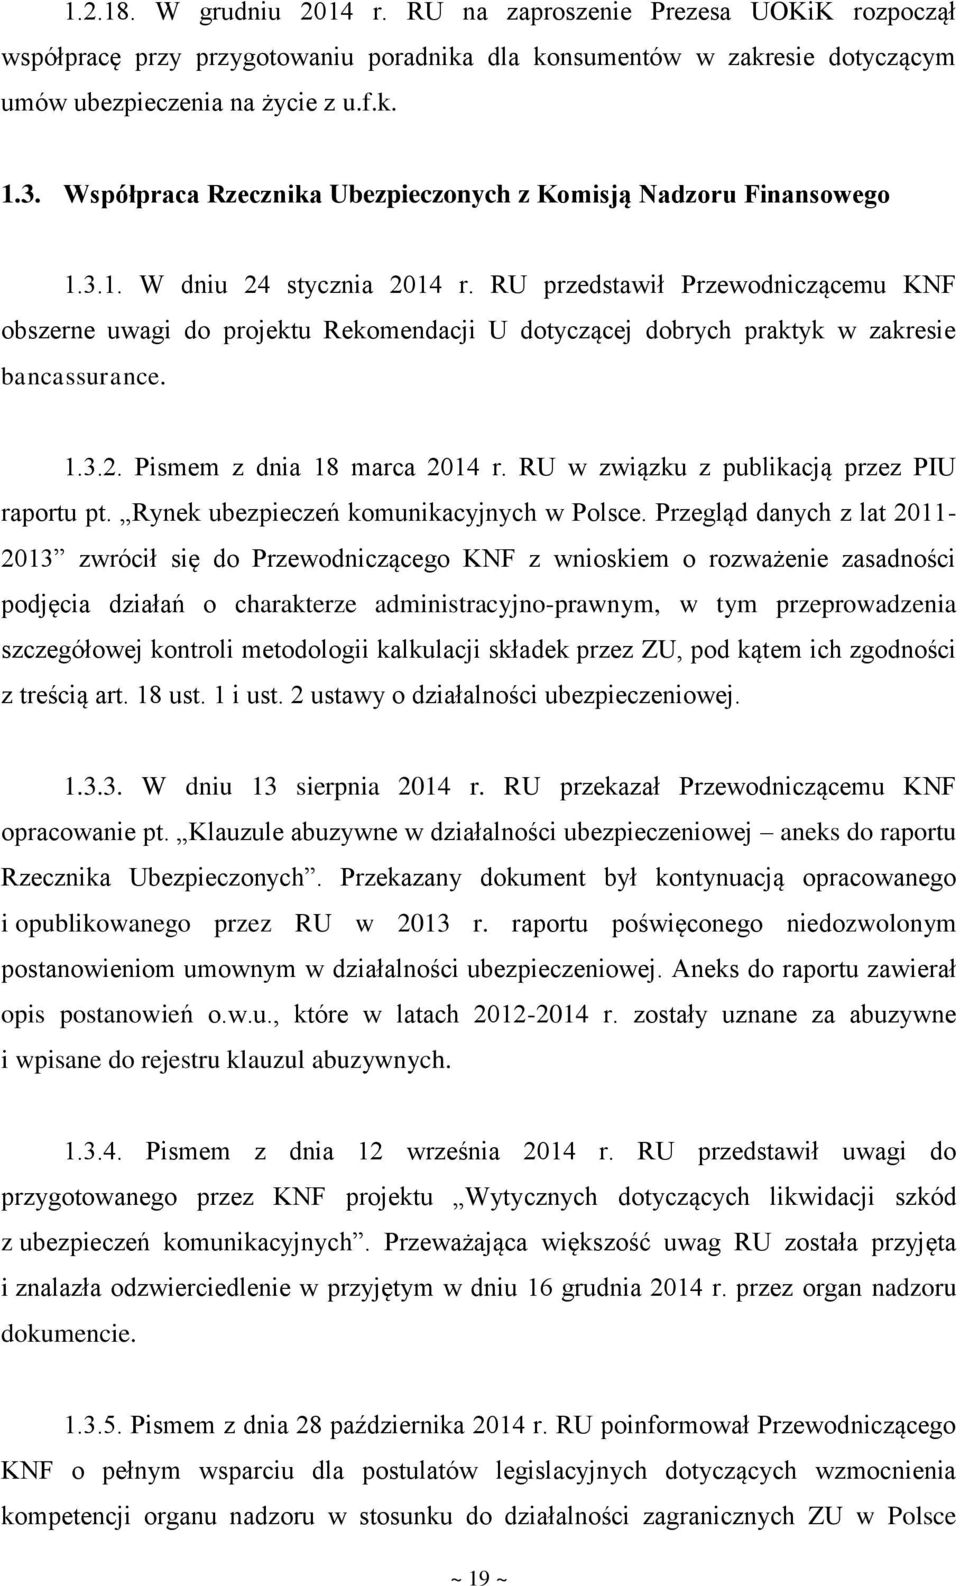 RU przedstawił Przewodniczącemu KNF obszerne uwagi do projektu Rekomendacji U dotyczącej dobrych praktyk w zakresie bancassurance. 1.3.2. Pismem z dnia 18 marca 2014 r.